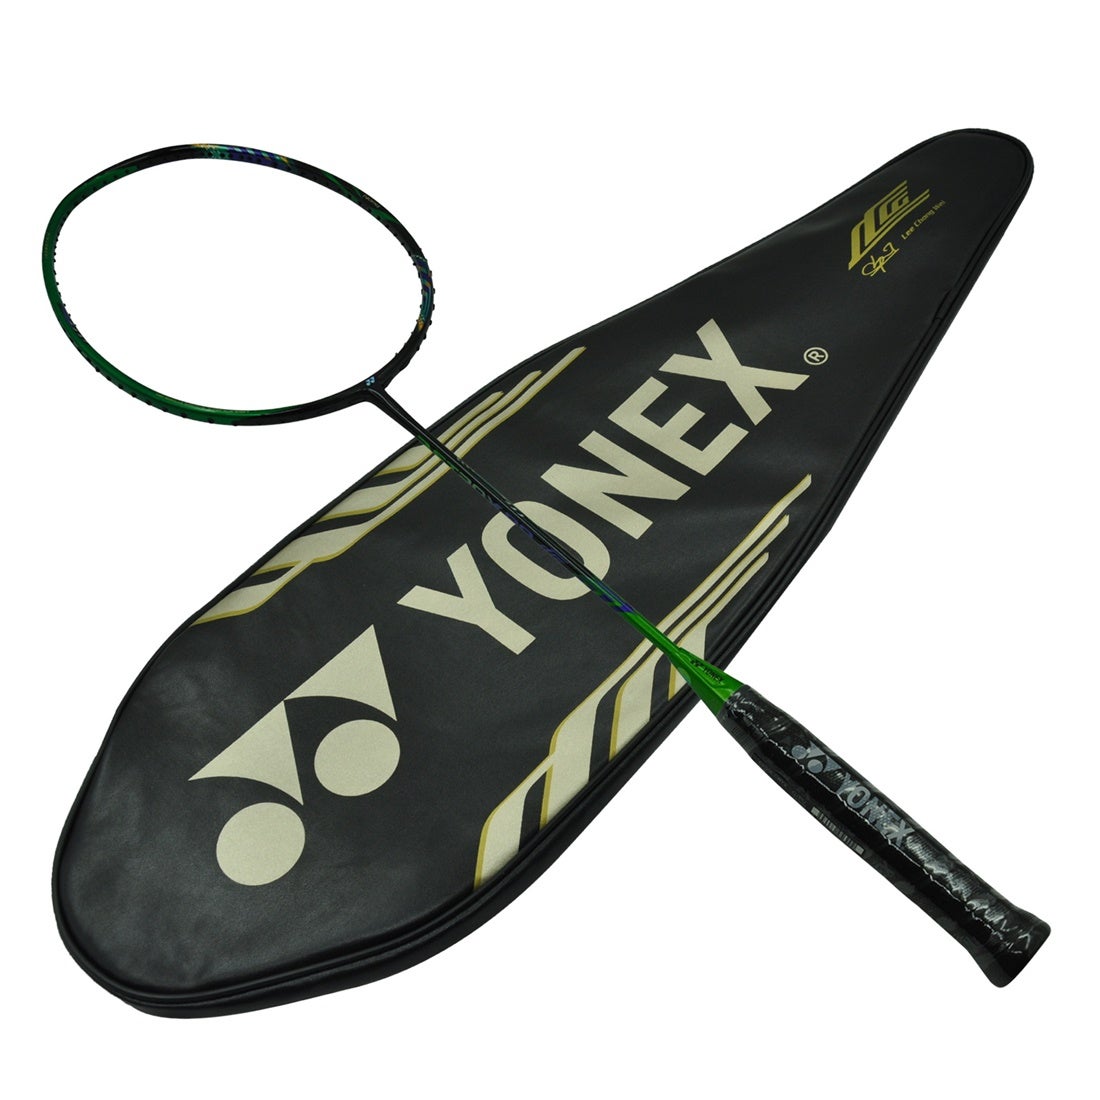 Buy Yonex Badminton Racquet - Astrox 99 - LCW Lee Chong Wei